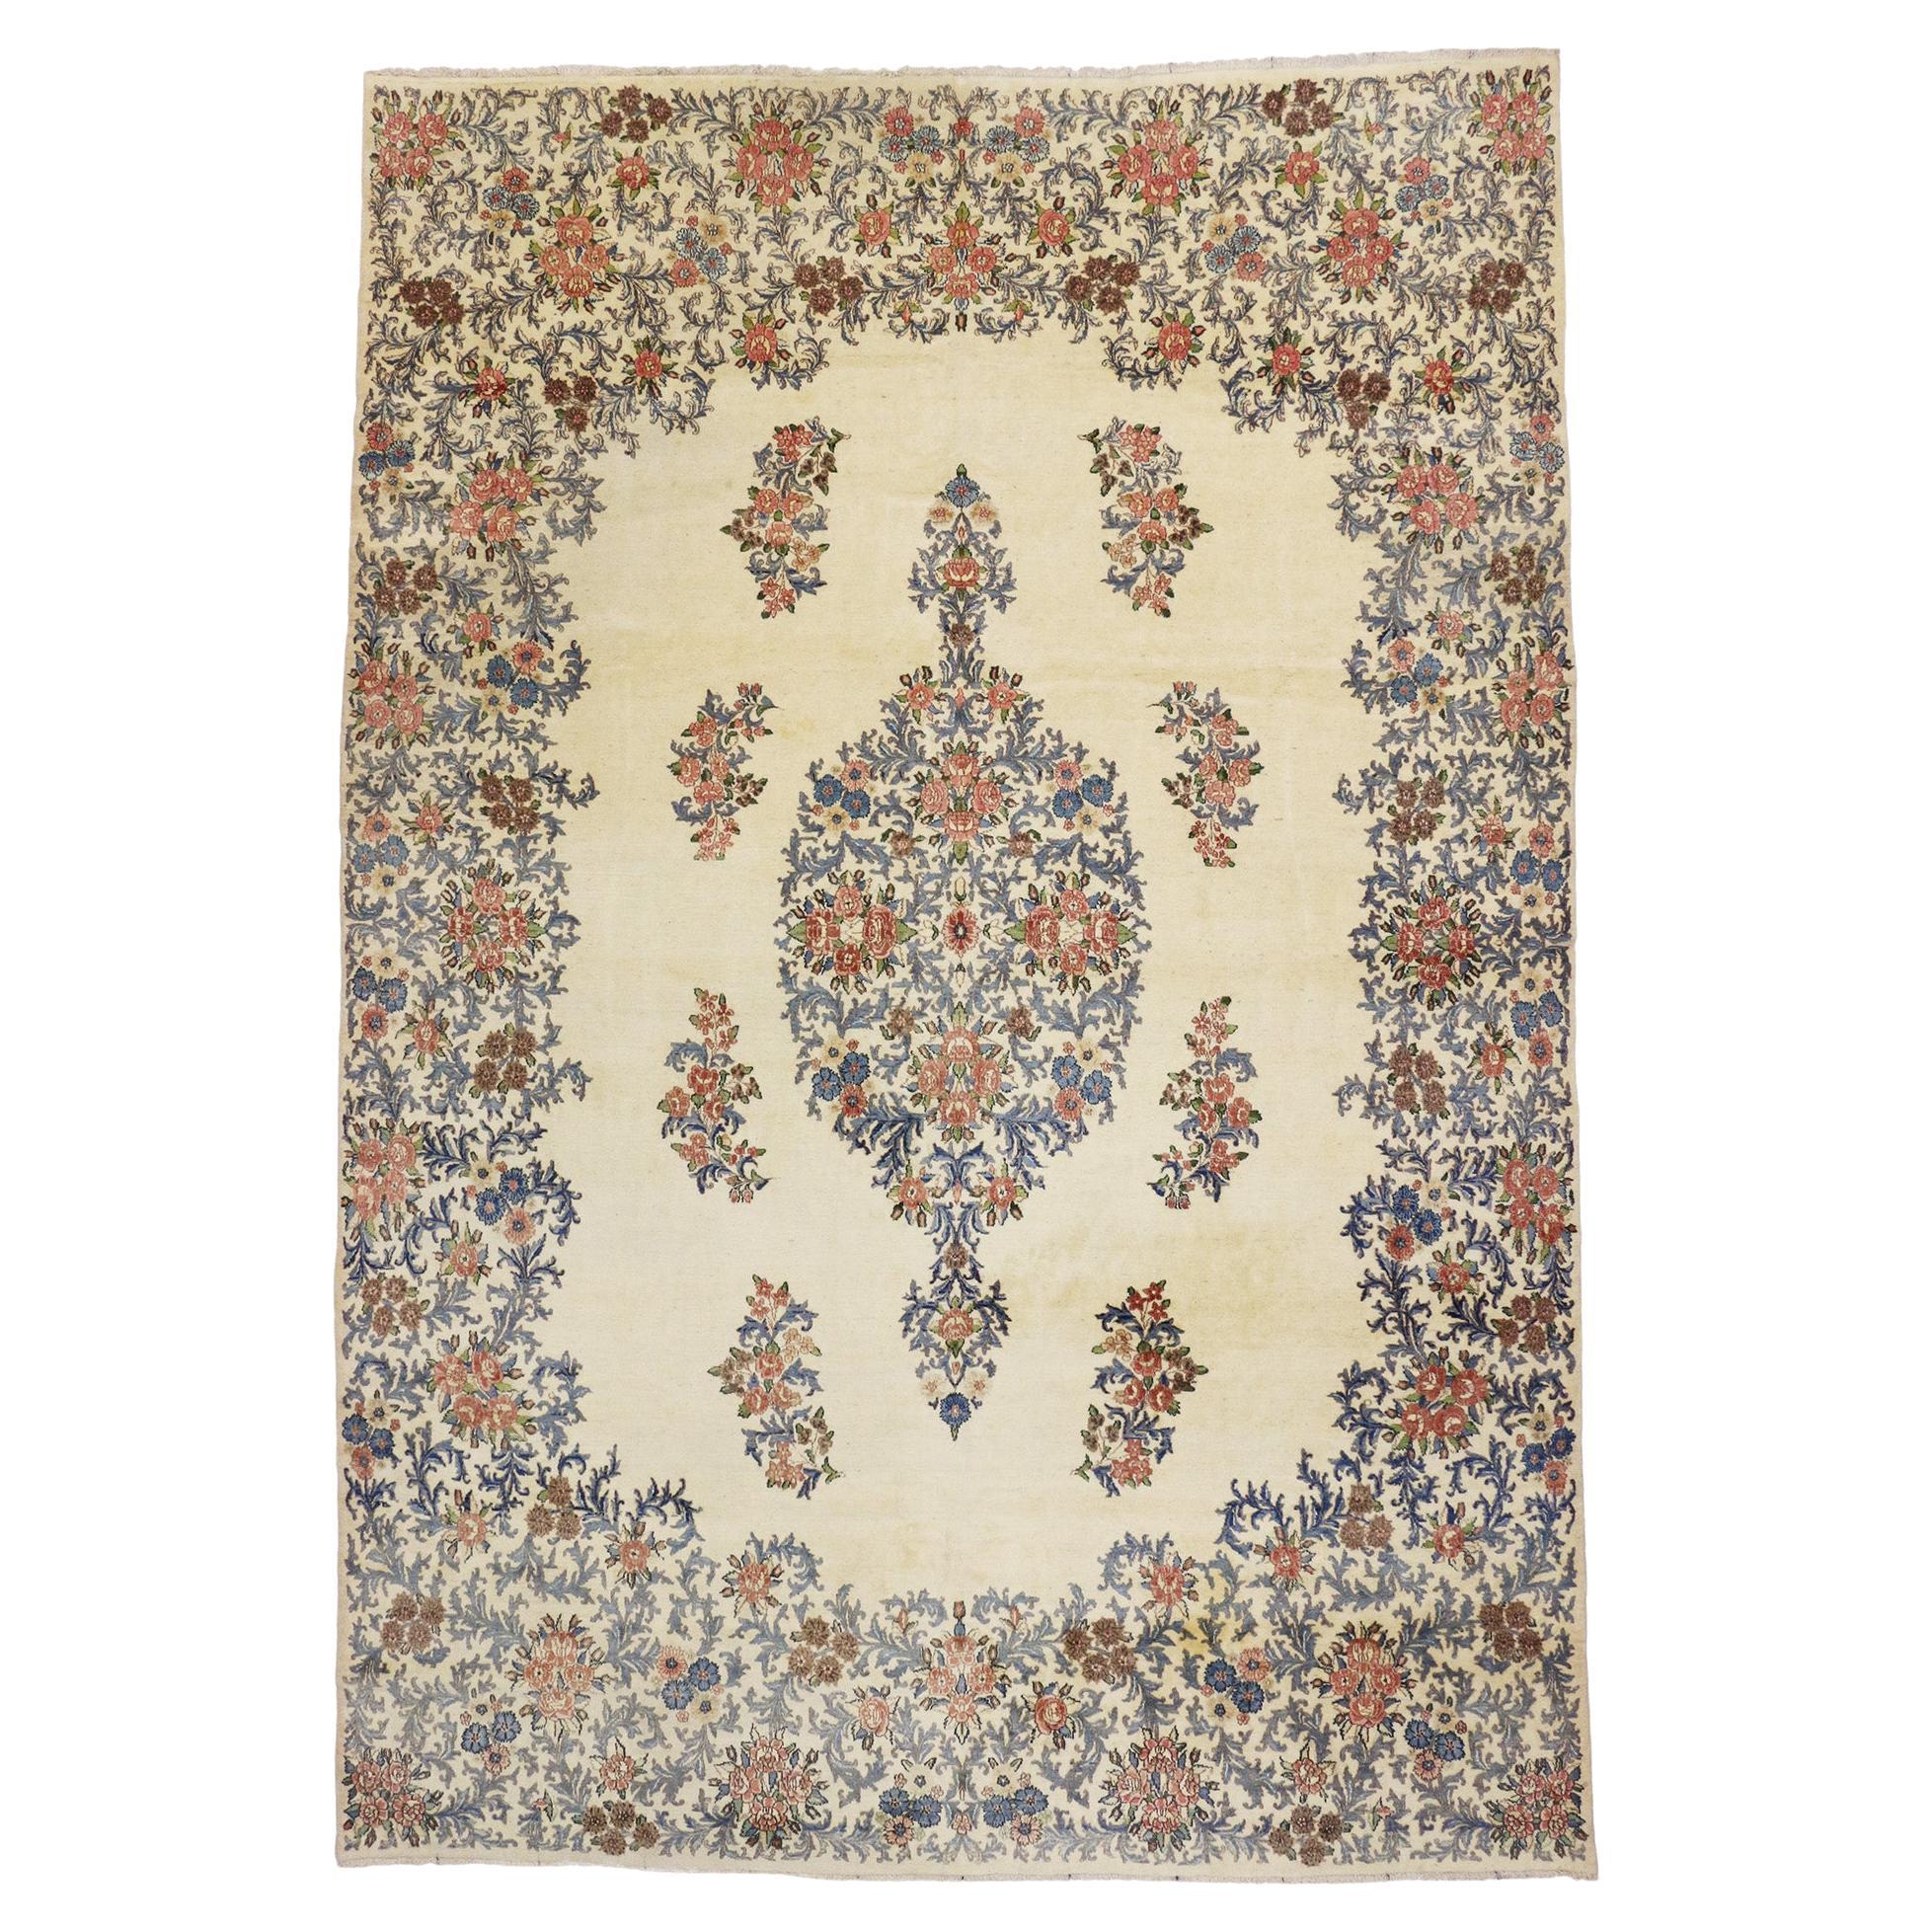 Ancien tapis persan Kerman de style traditionnel aux couleurs claires